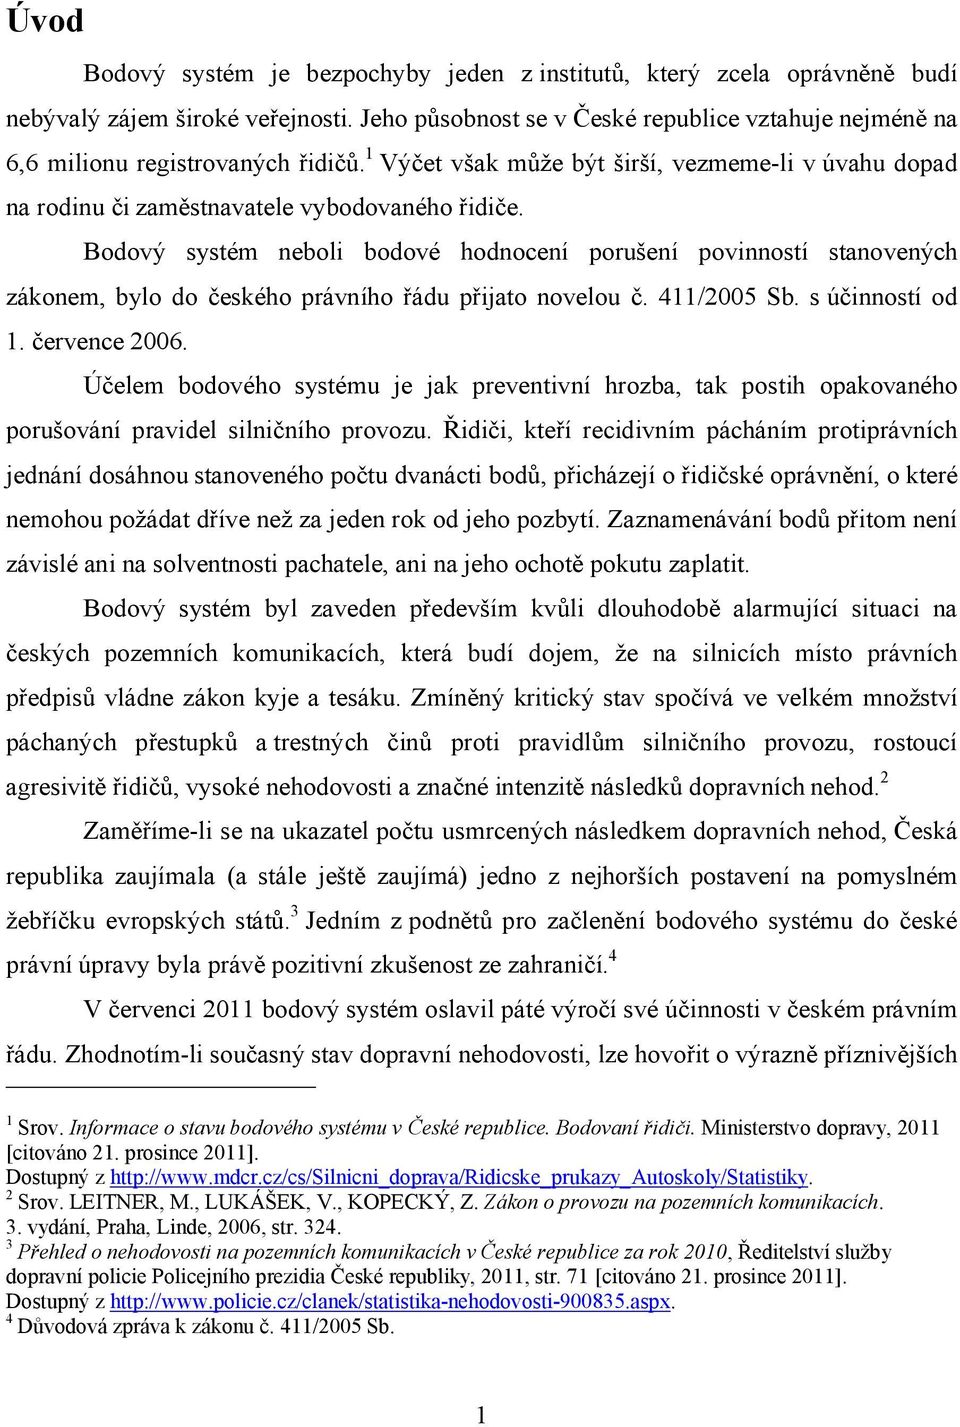 Bodový systém neboli bodové hodnocení porušení povinností stanovených zákonem, bylo do českého právního řádu přijato novelou č. 411/2005 Sb. s účinností od 1. července 2006.